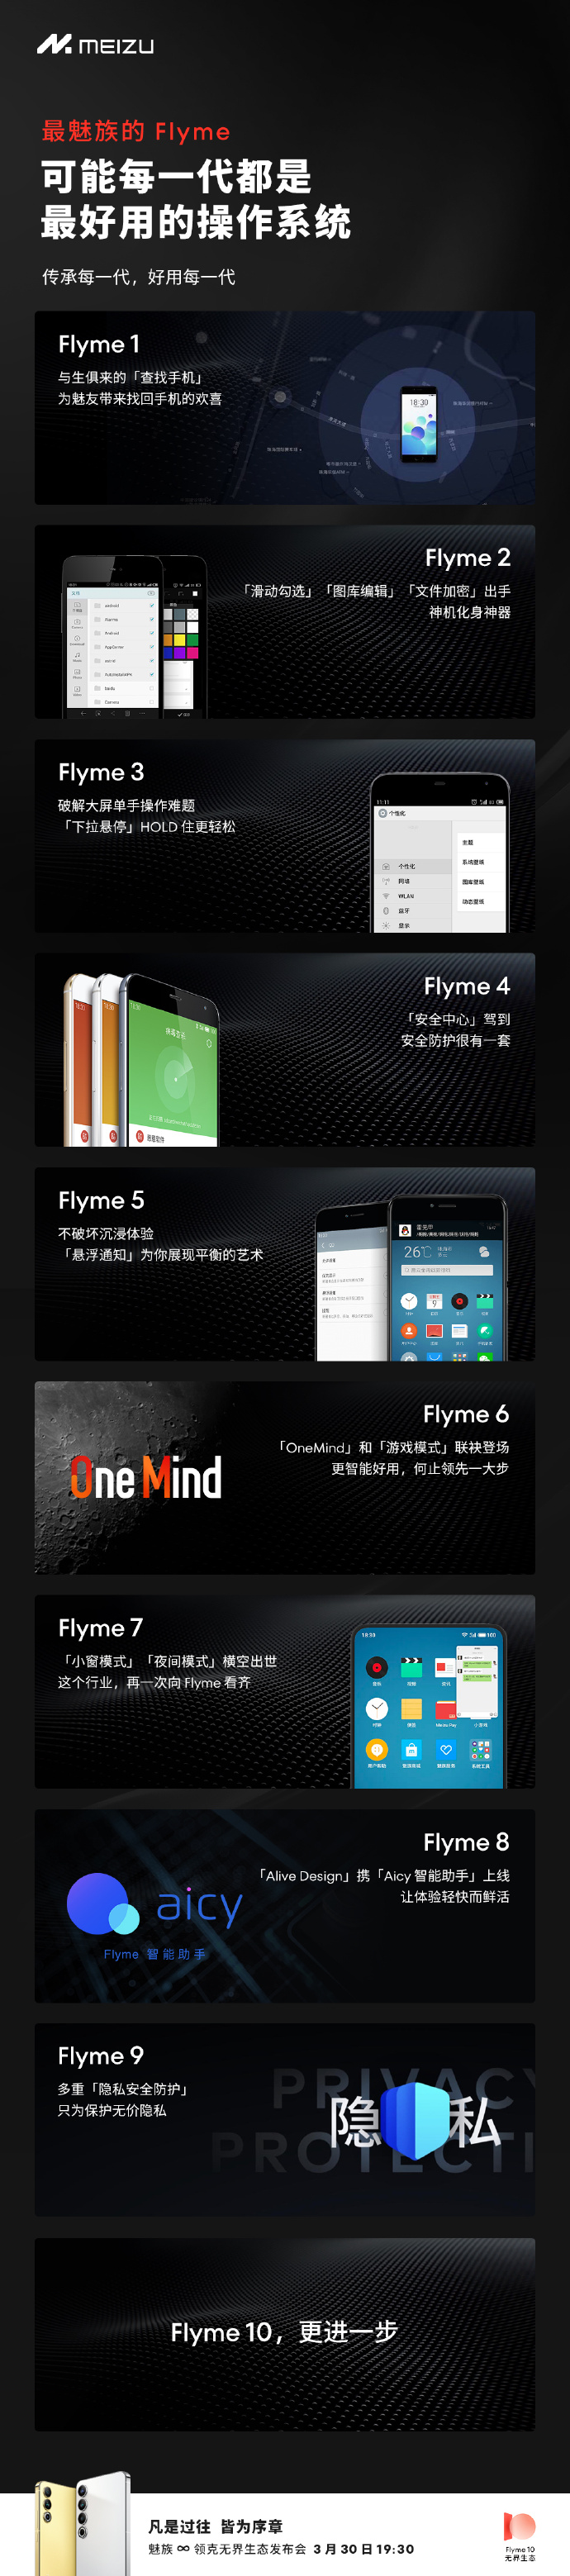 魅族20系列首发搭载Flyme10 一起超越用户期待